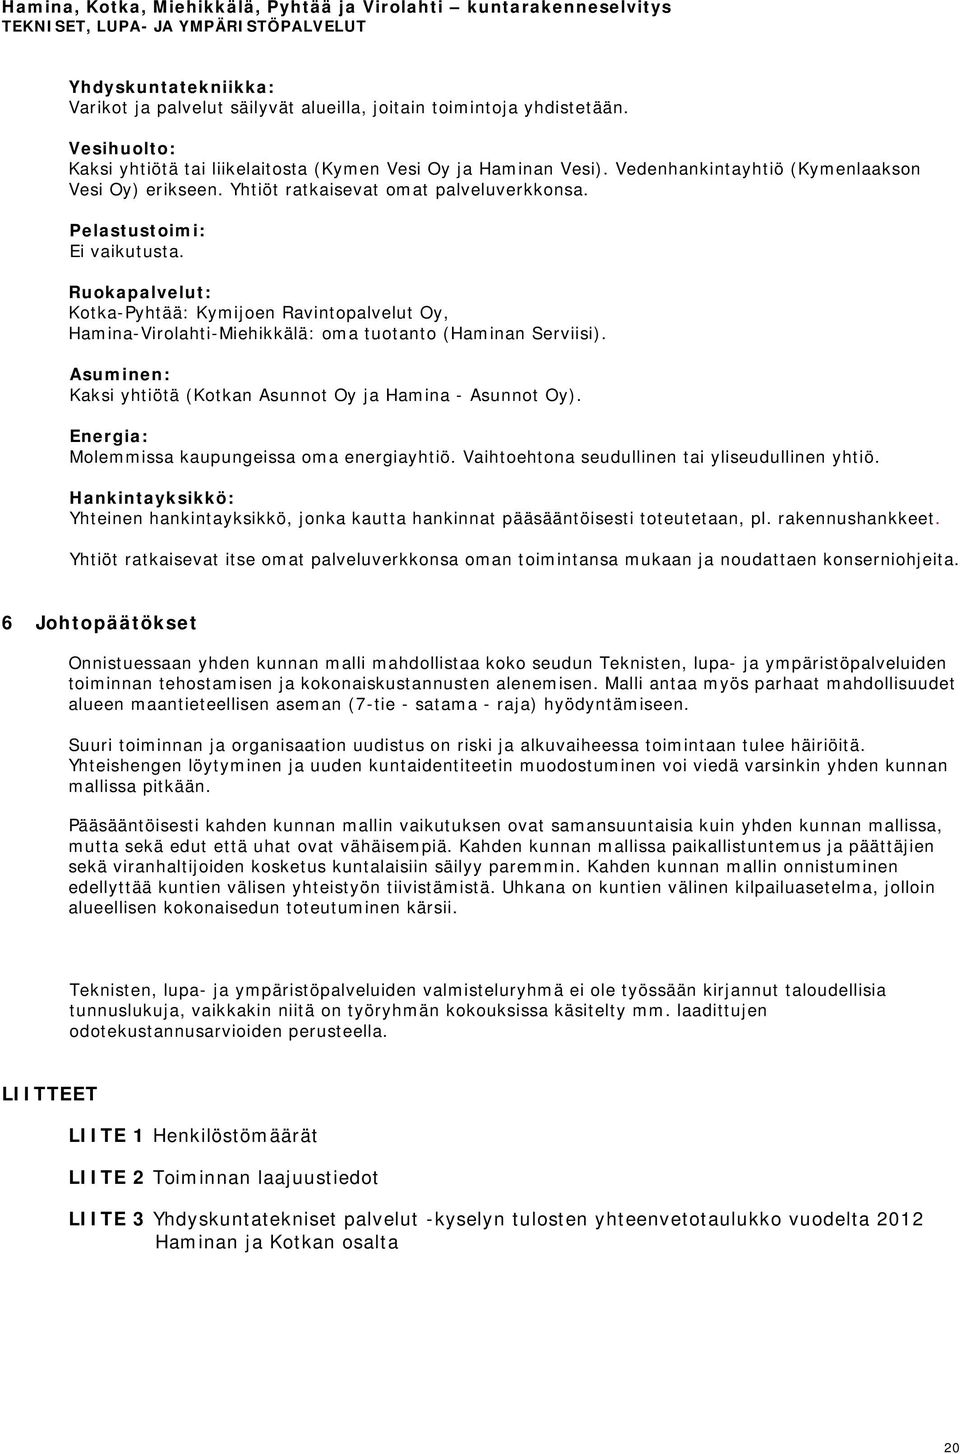 Ruokapalvelut: Kotka-Pyhtää: Kymijoen Ravintopalvelut Oy, Hamina-Virolahti-Miehikkälä: oma tuotanto (Haminan Serviisi). Asuminen: Kaksi yhtiötä (Kotkan Asunnot Oy ja Hamina - Asunnot Oy).